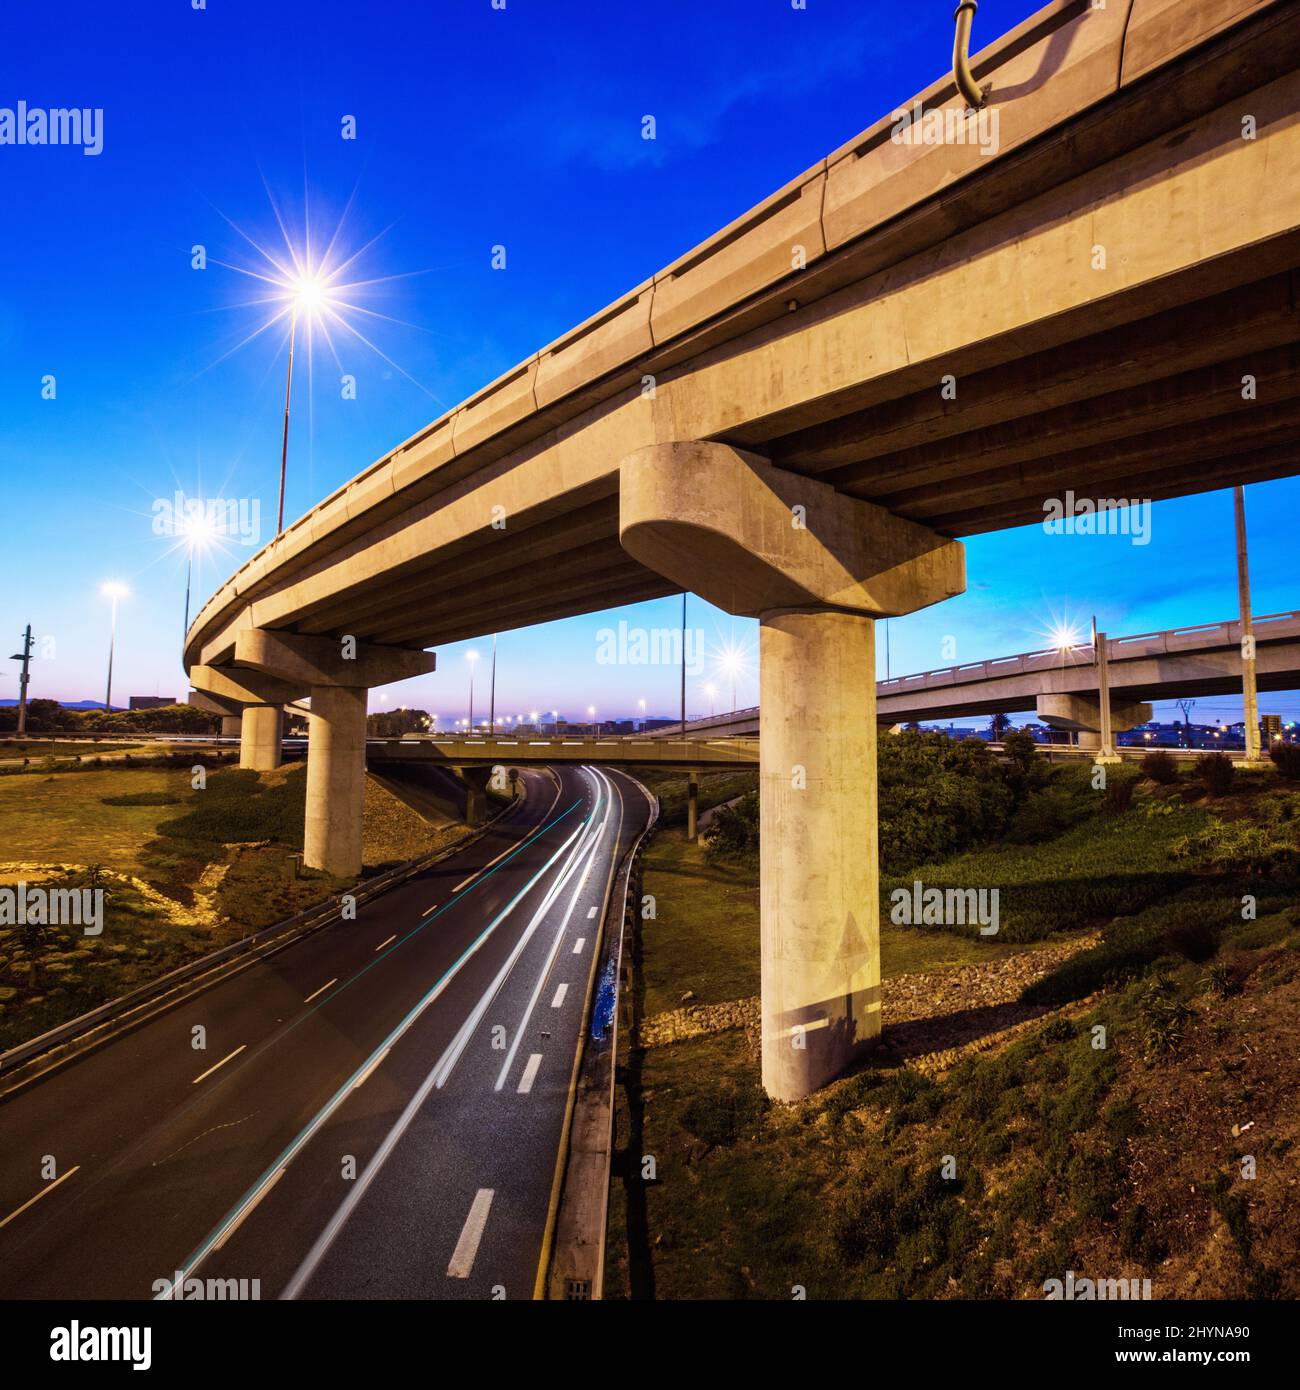 Marcatura delle infrastrutture moderne - Trasporti. Un'immagine ritagliata di un cavalcavia di cemento su un tratto di strada. Foto Stock